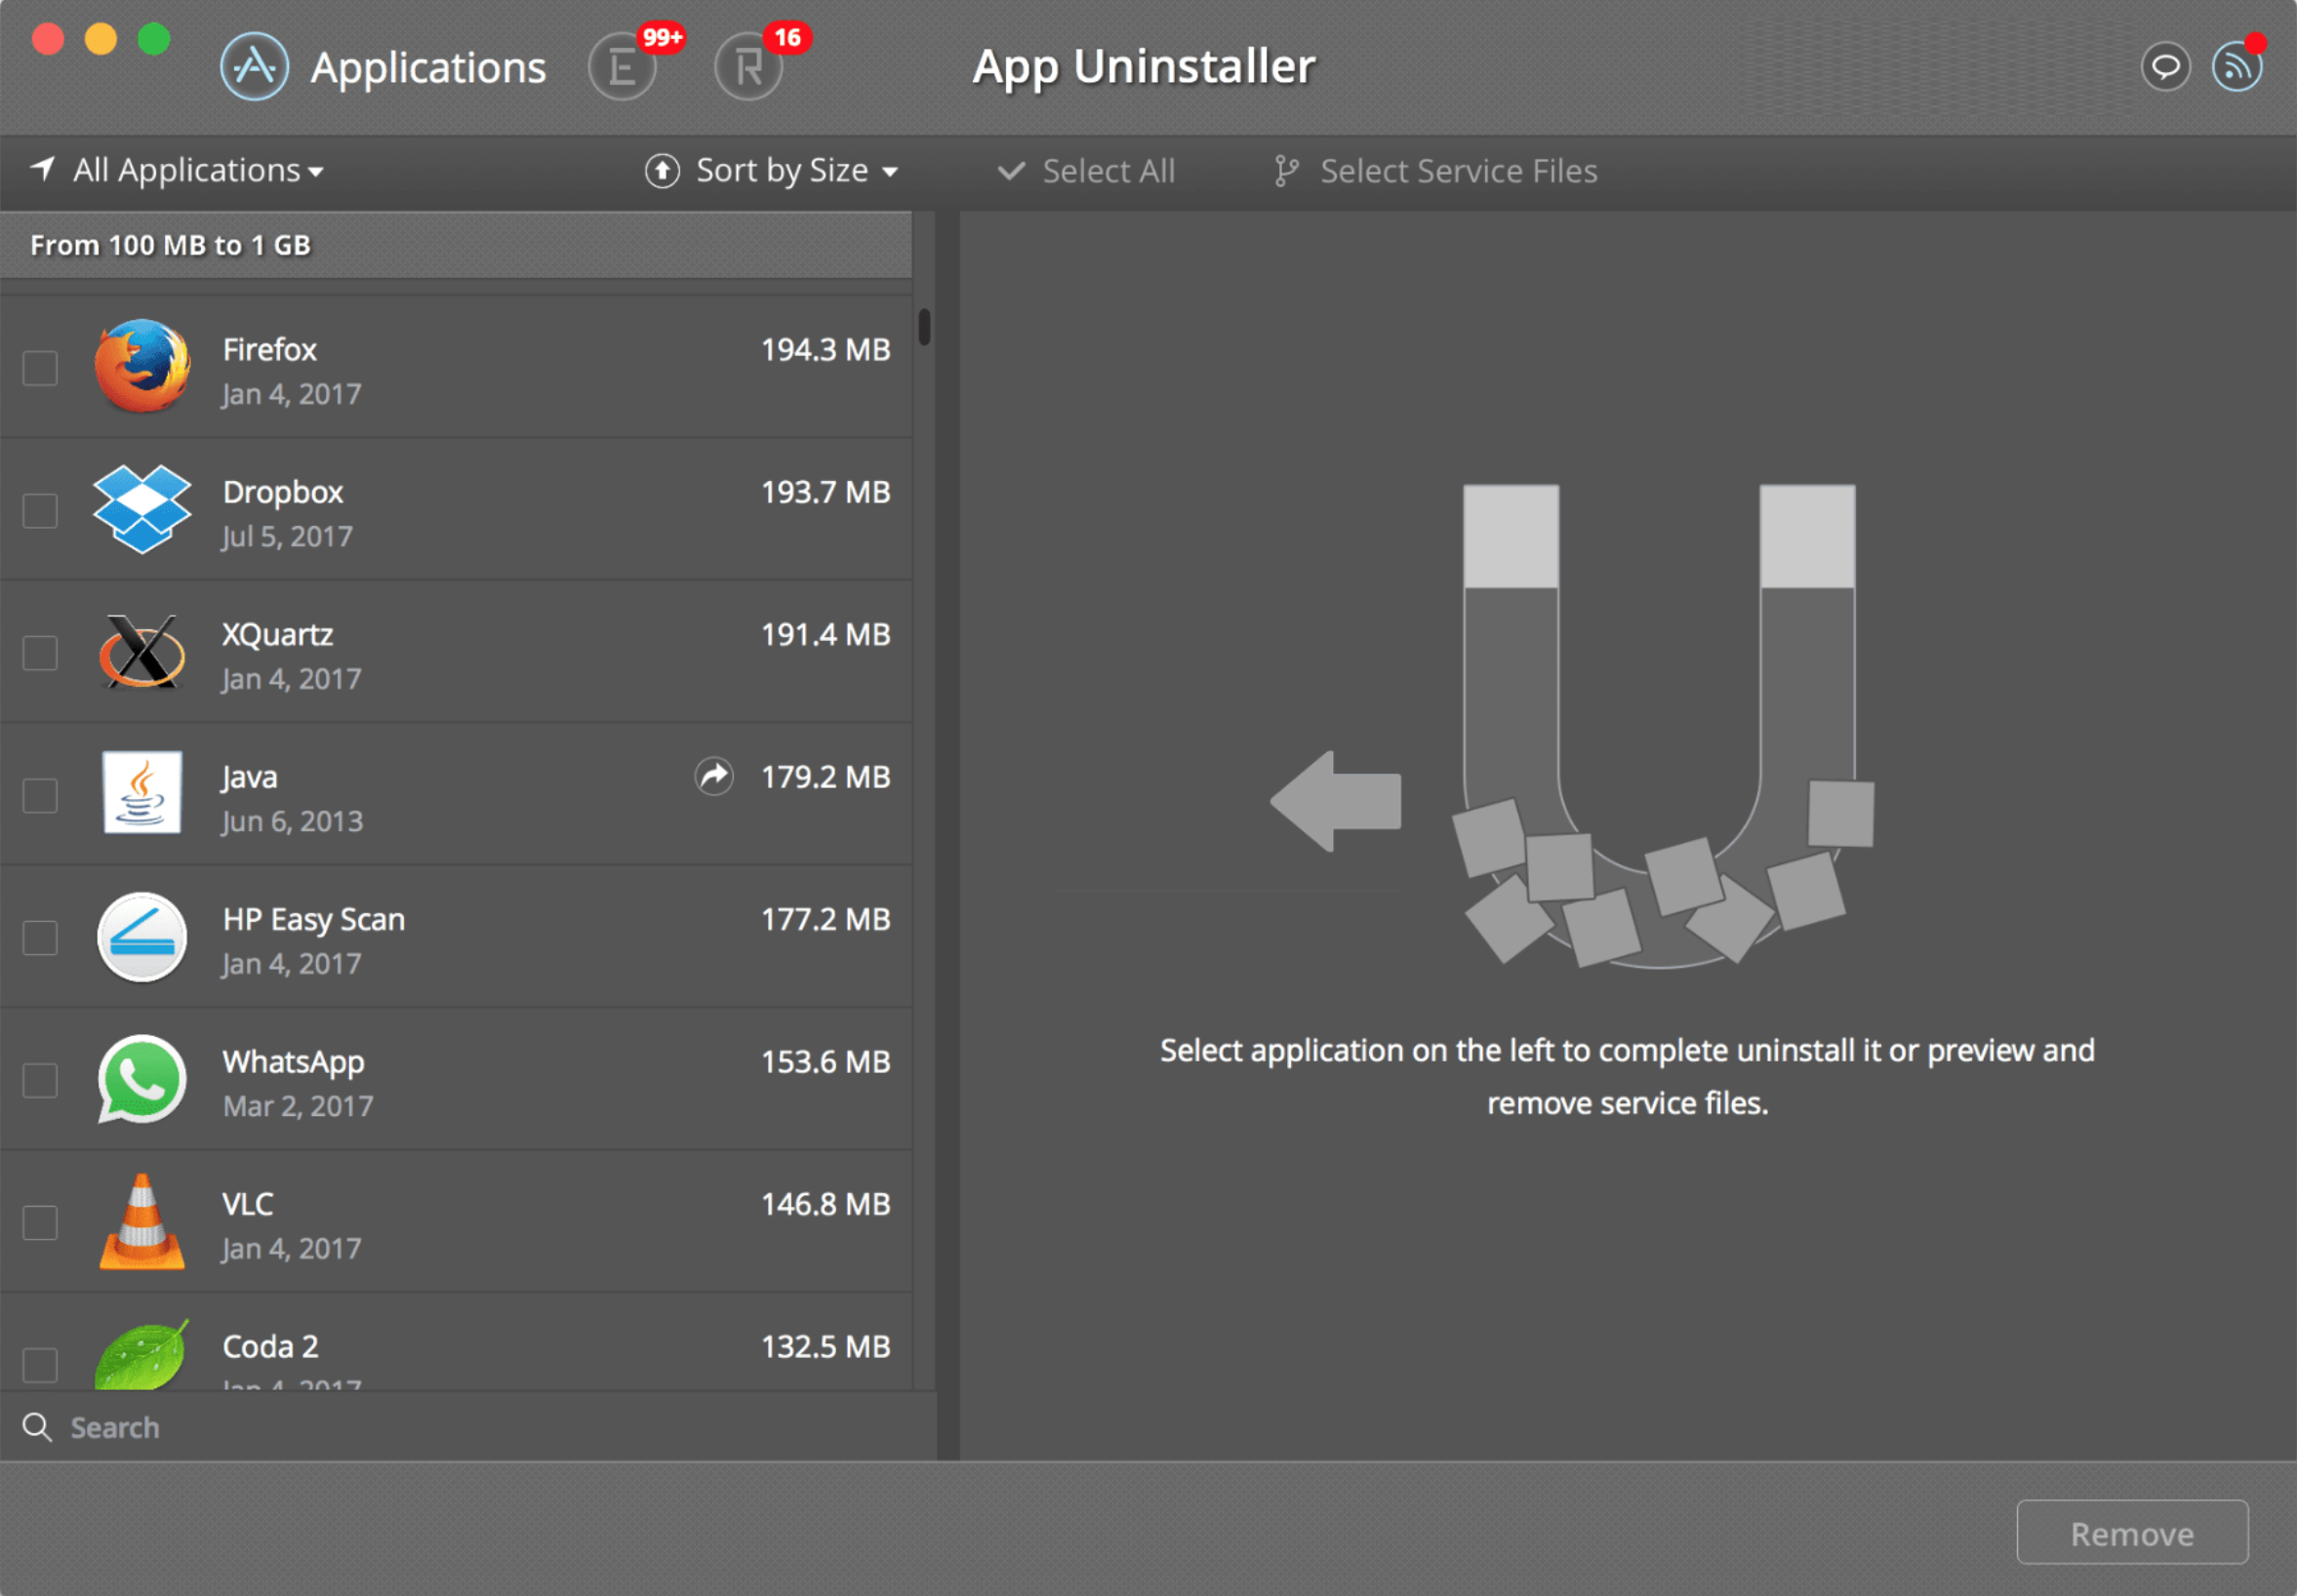 App Uninstaller 6.3 (242) 应用程序卸载软件